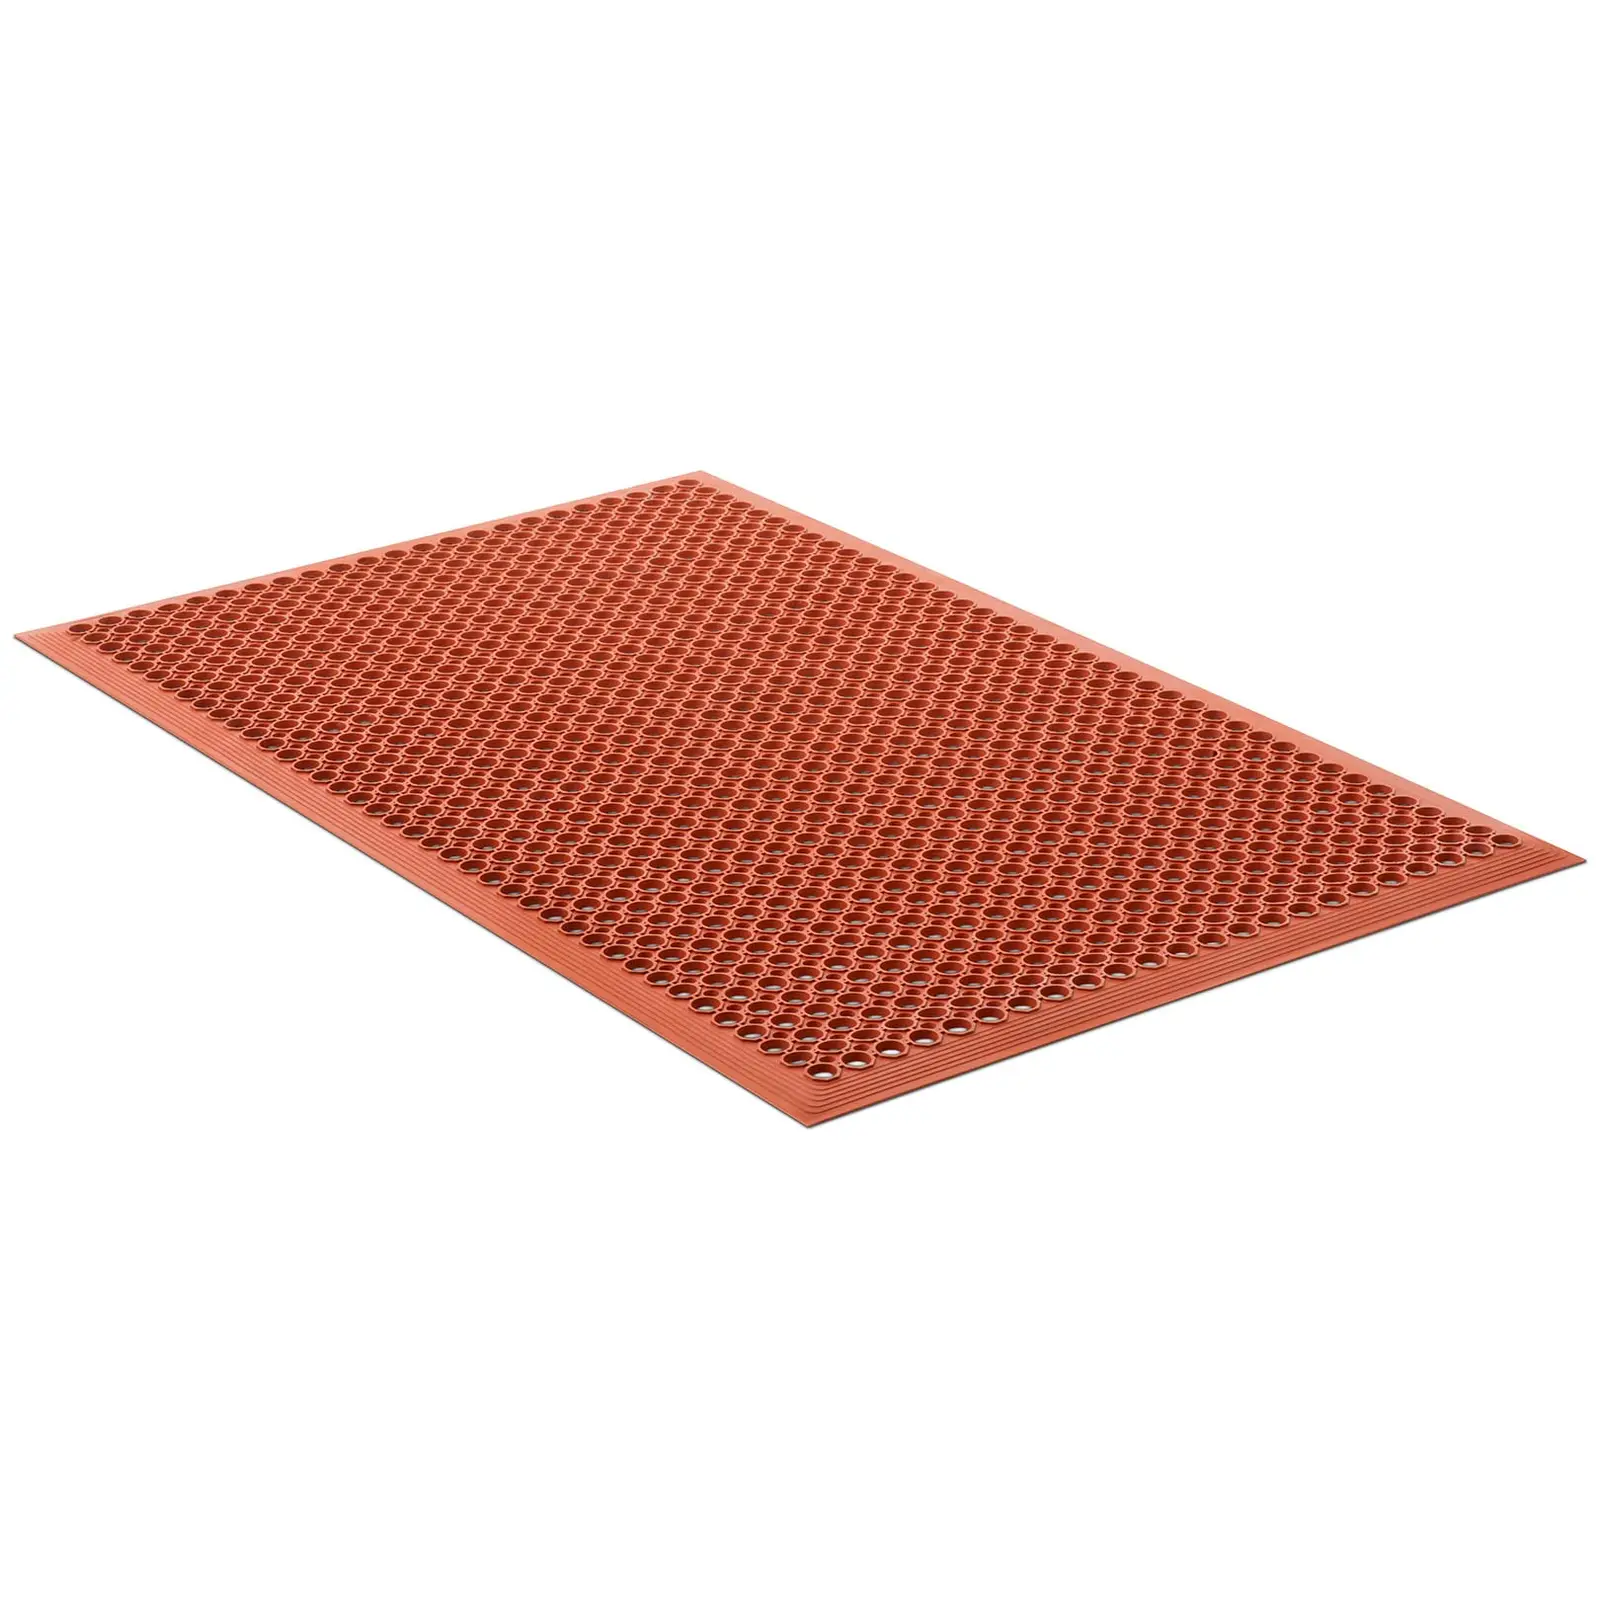 Ringgummimatta - 153 x 92 x 1 cm - Röd